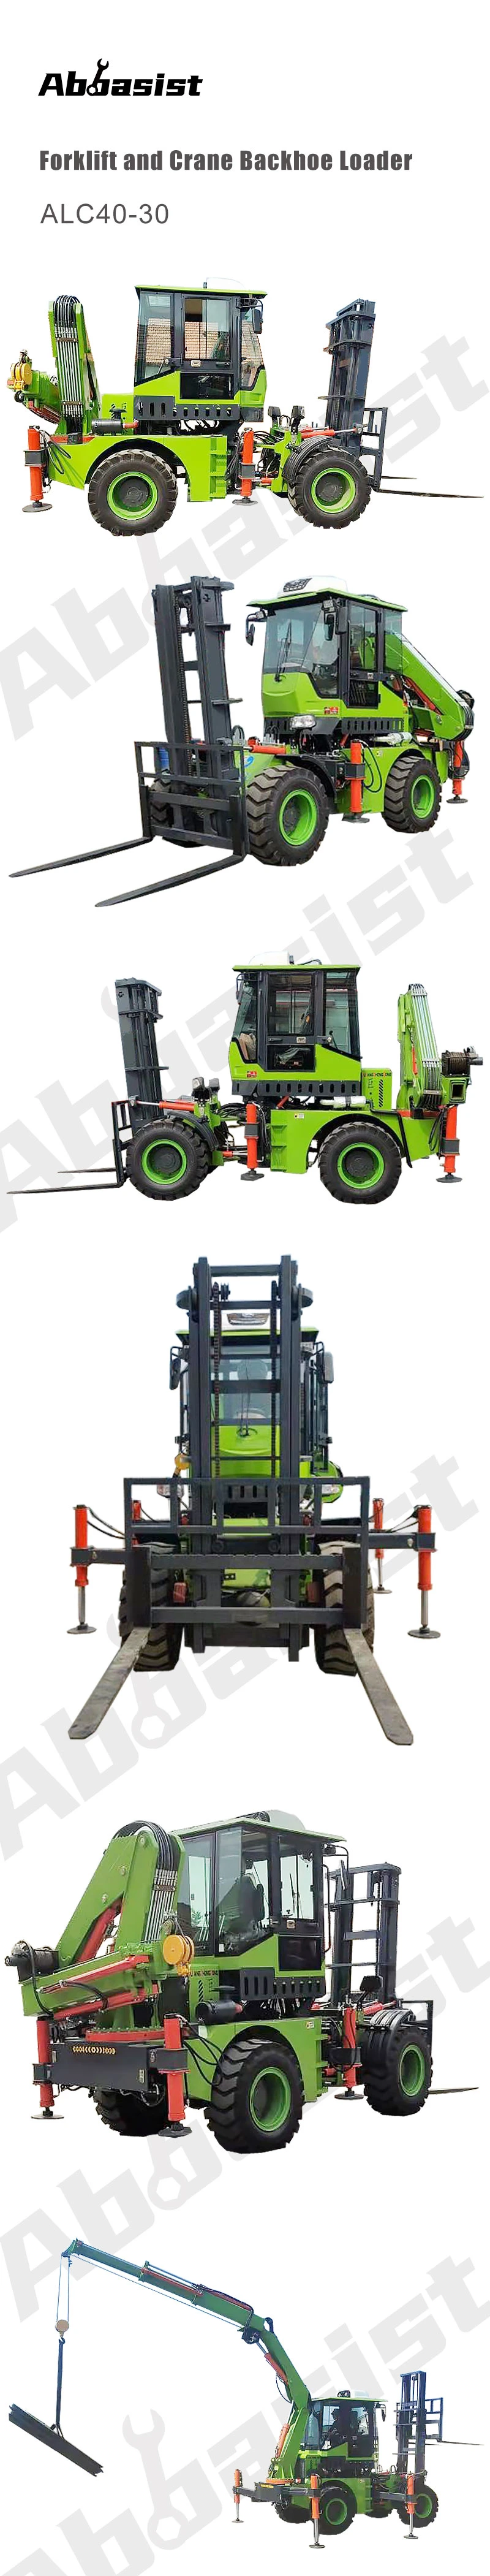 ALC40-30 excavator wheel loader for digging work